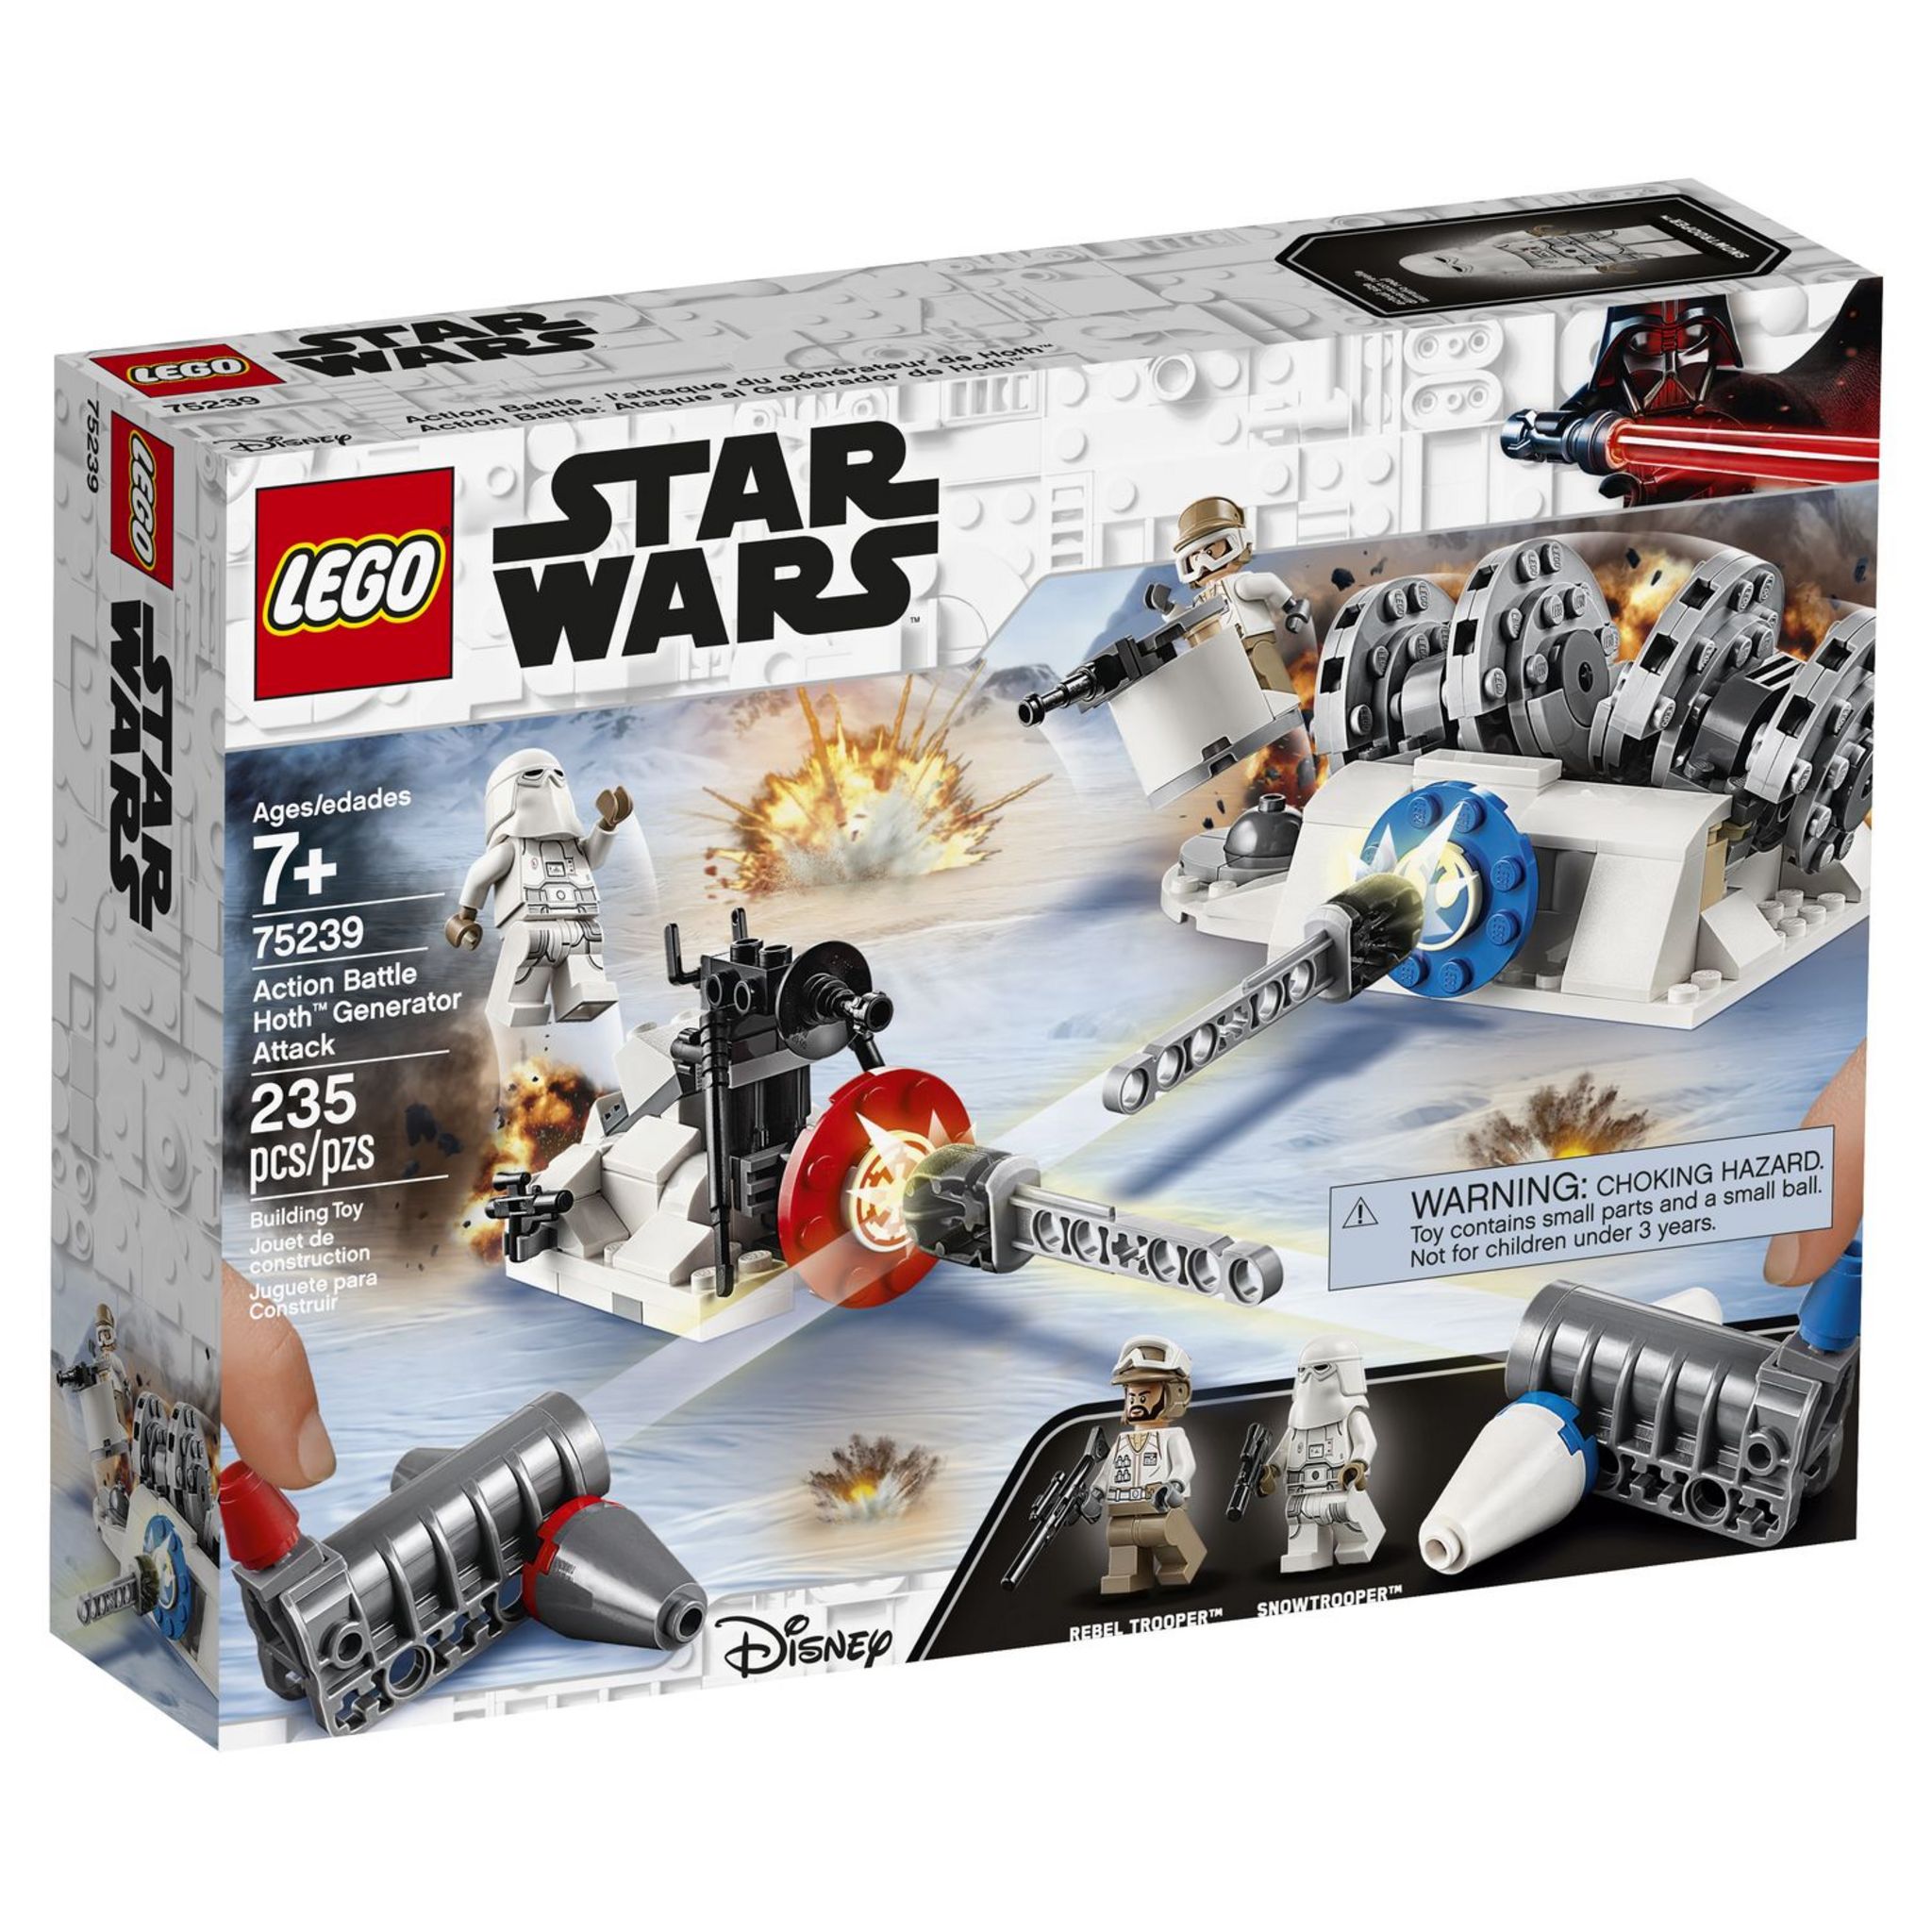 Comment améliorer votre LEGO Star Wars Figurines de soldat rebelle